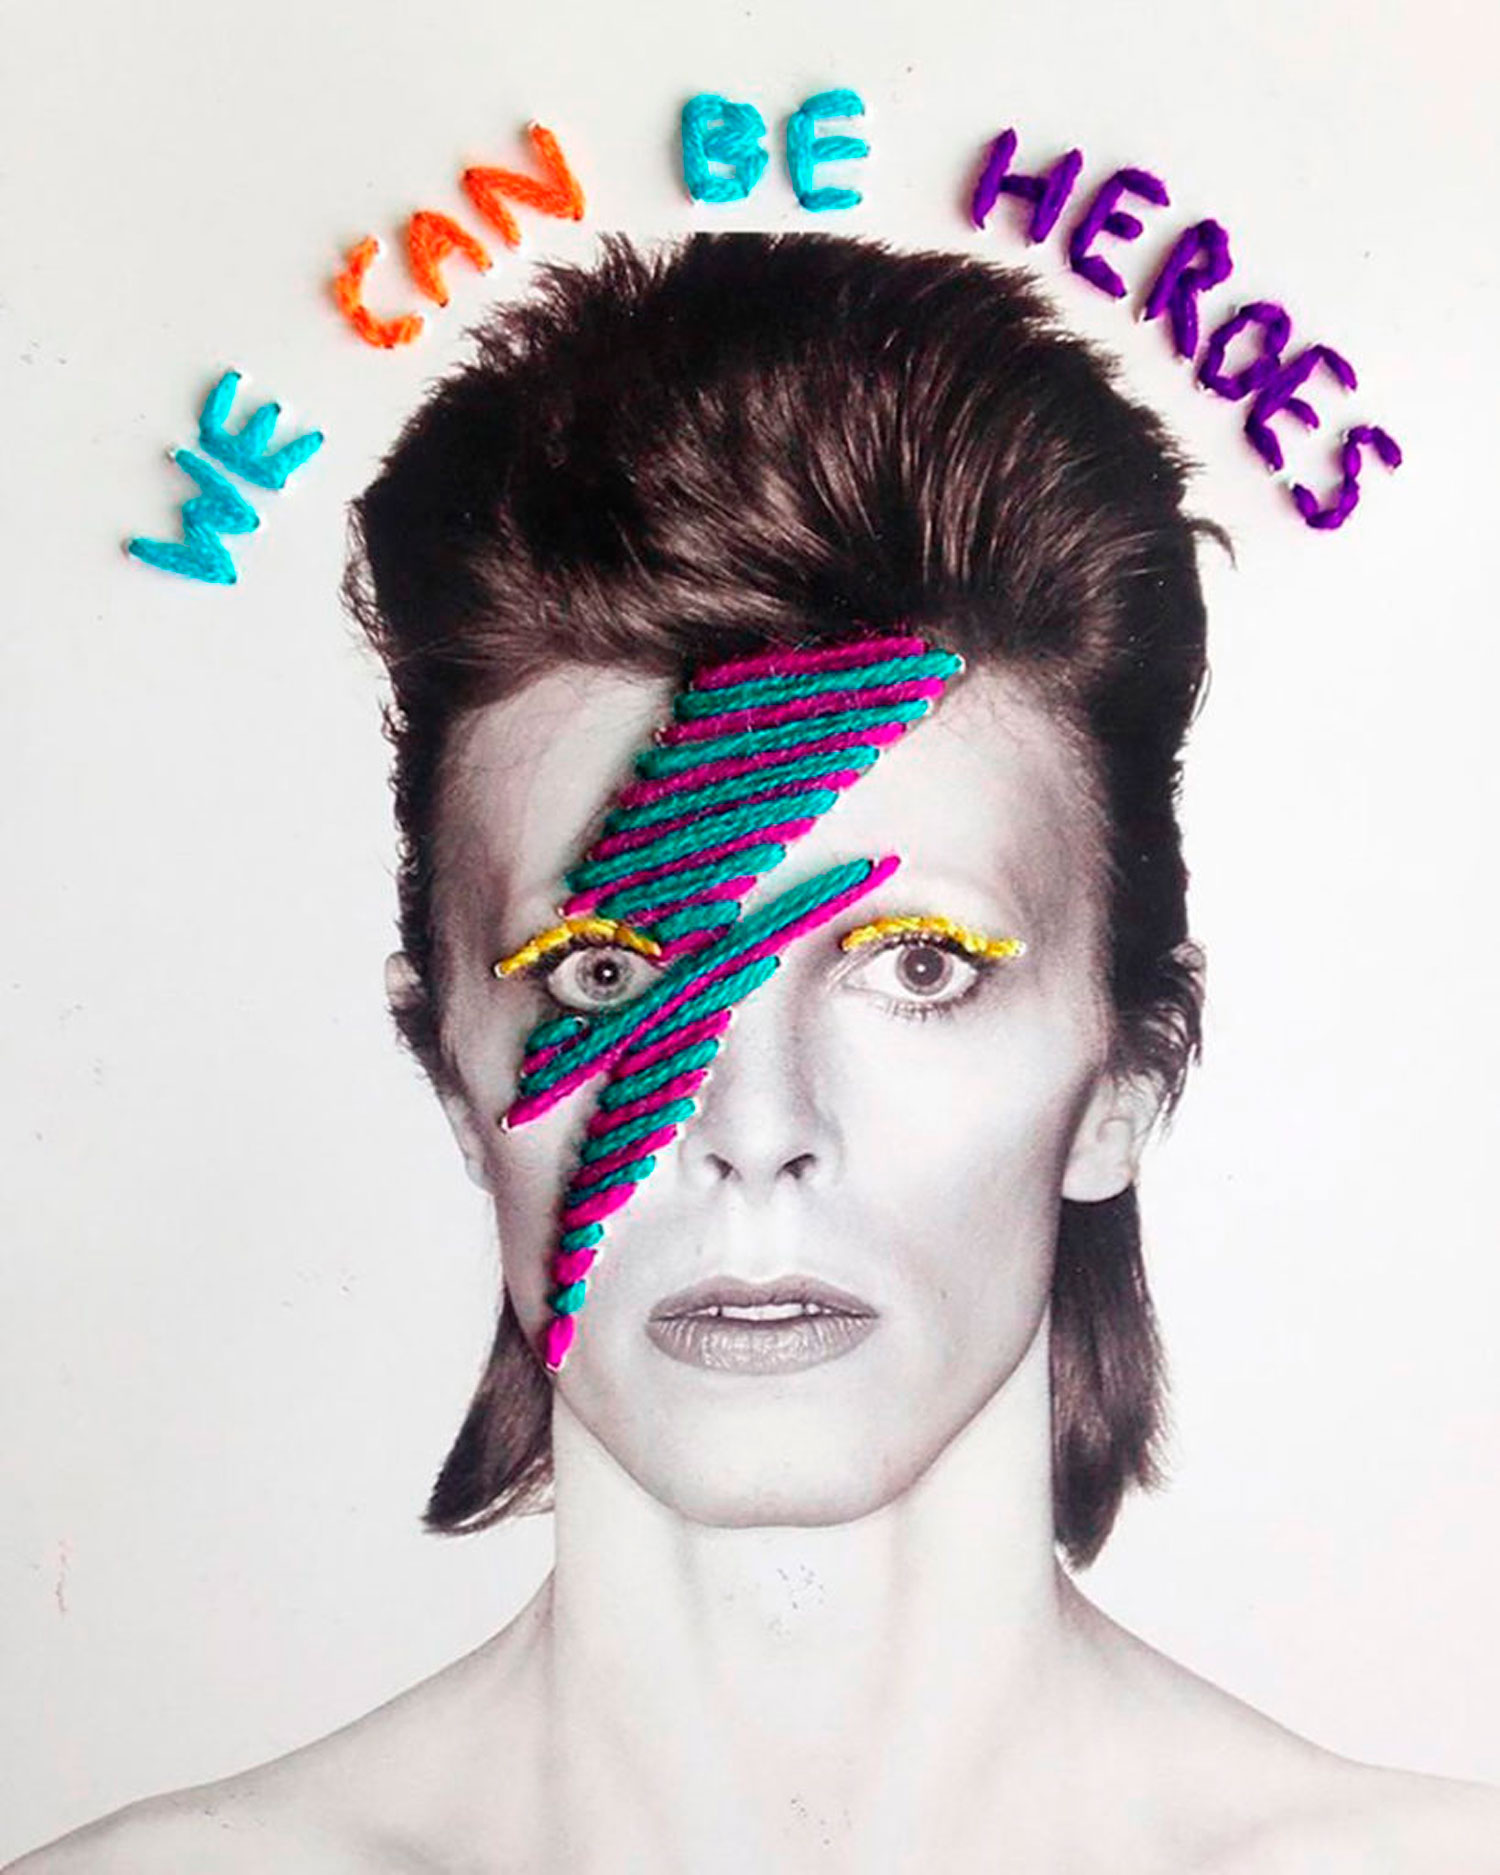 David Bowie portrait by Victoria Villasana